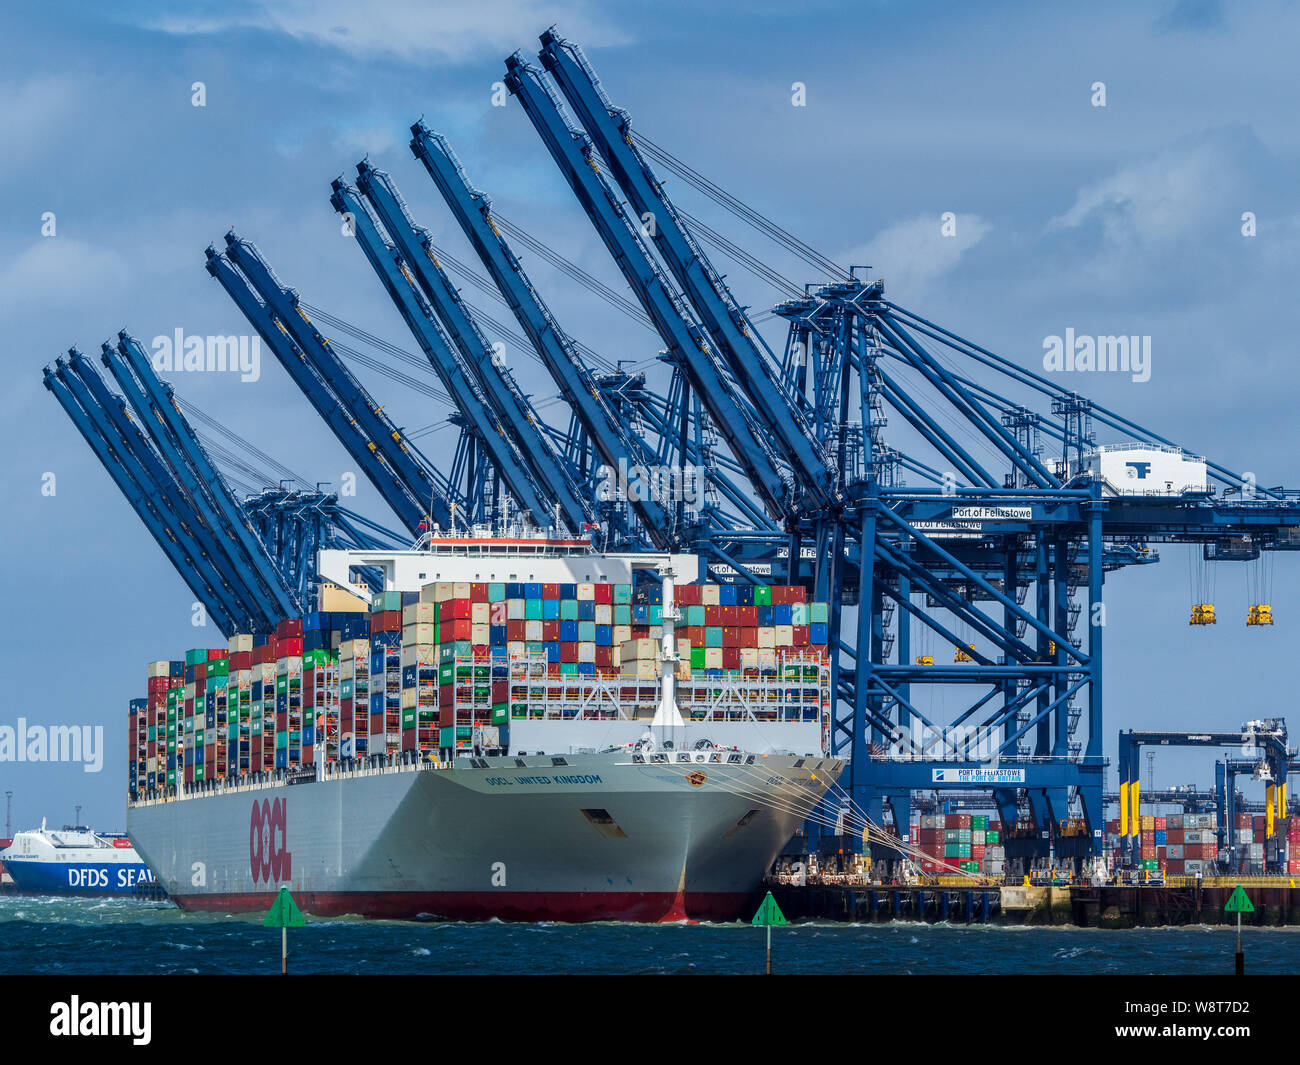 OOCL United Kingdom Vessel dockte am Felixstowe Port an, um Container zu laden und zu entladen. OOCL ist eine in Hongkong ansässige Schiffahrtsgesellschaft. Stockfoto